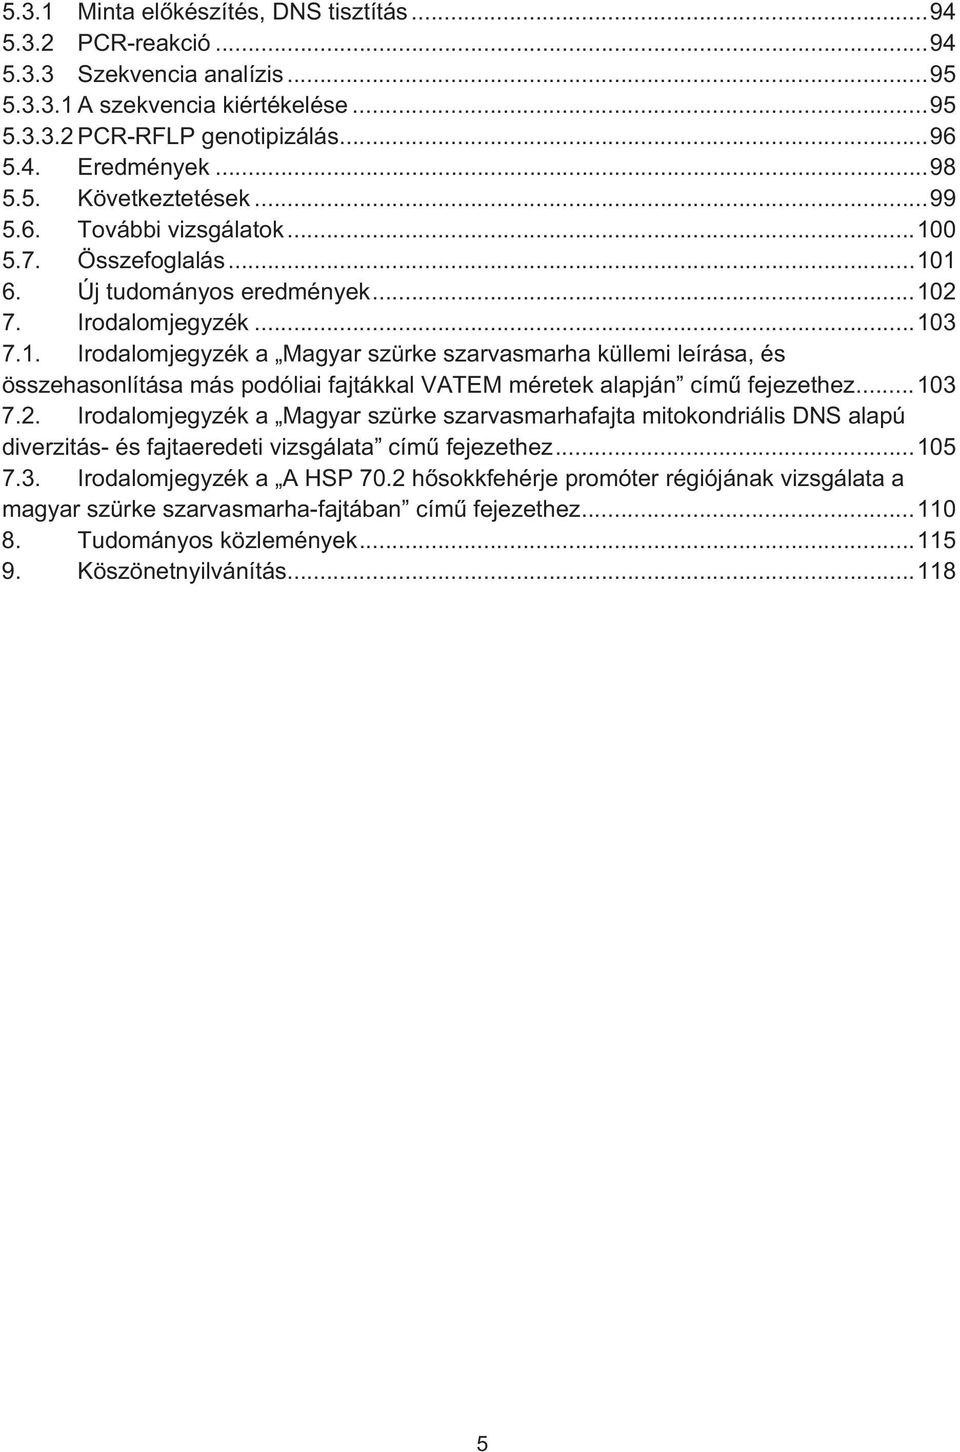 .. 103 7.2. Irodalomjegyzék a Magyar szürke szarvasmarhafajta mitokondriális DNS alapú diverzitás- és fajtaeredeti vizsgálata cím fejezethez... 105 7.3. Irodalomjegyzék a A HSP 70.